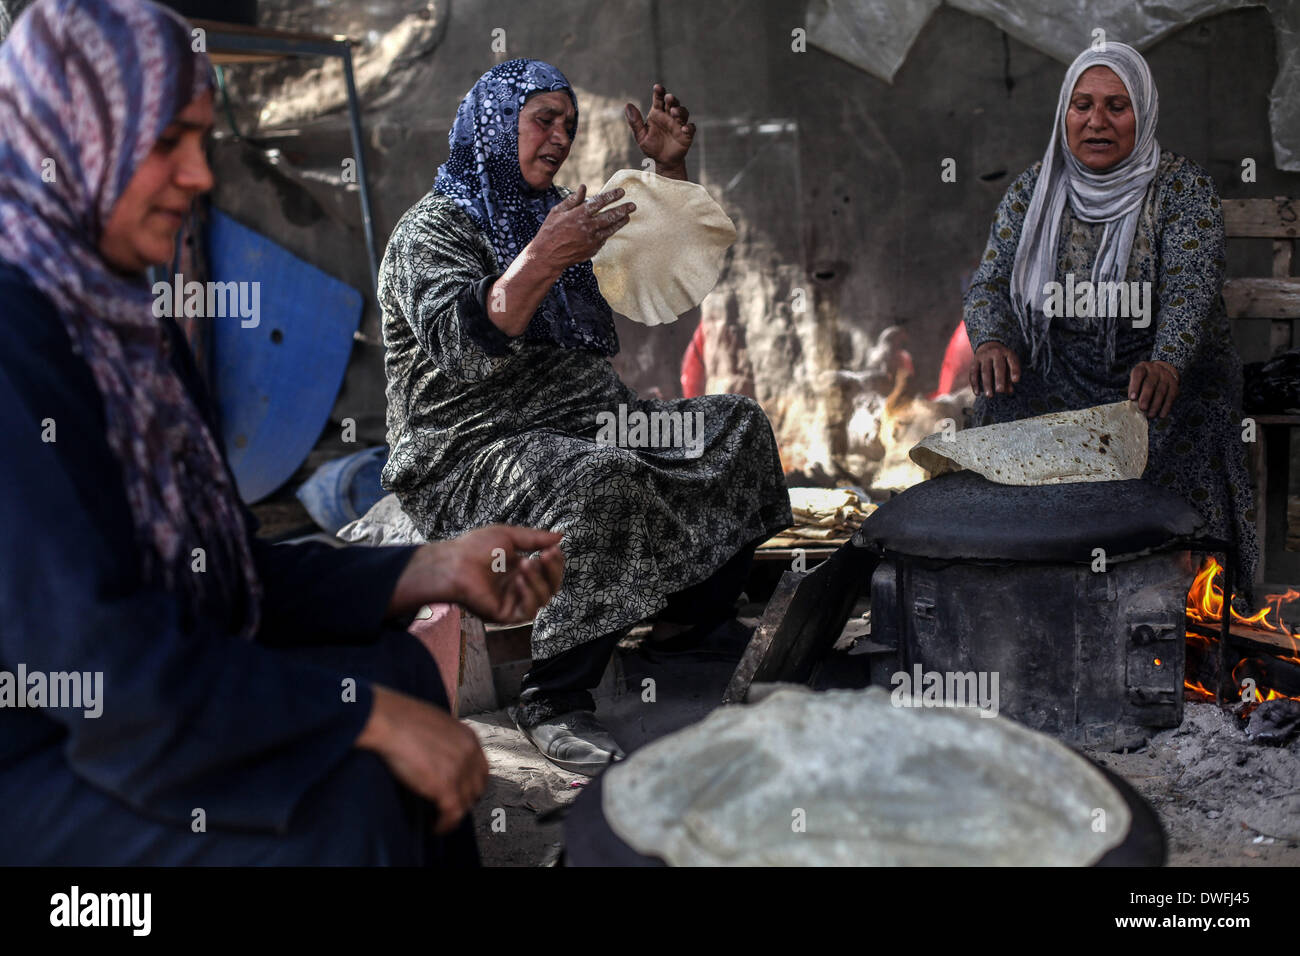 Gaza, Territoires palestiniens. 7 mars, 2014. Les femmes palestiniennes qui travaillent dans l'industrie alimentaire et de vendre c'est une source de subsistance et gagner de l'argent. Tombe le Samedi, 8 mars 2014, Journée internationale des femmes. © Majdi Fathi/NurPhoto ZUMAPRESS.com/Alamy/Live News Banque D'Images